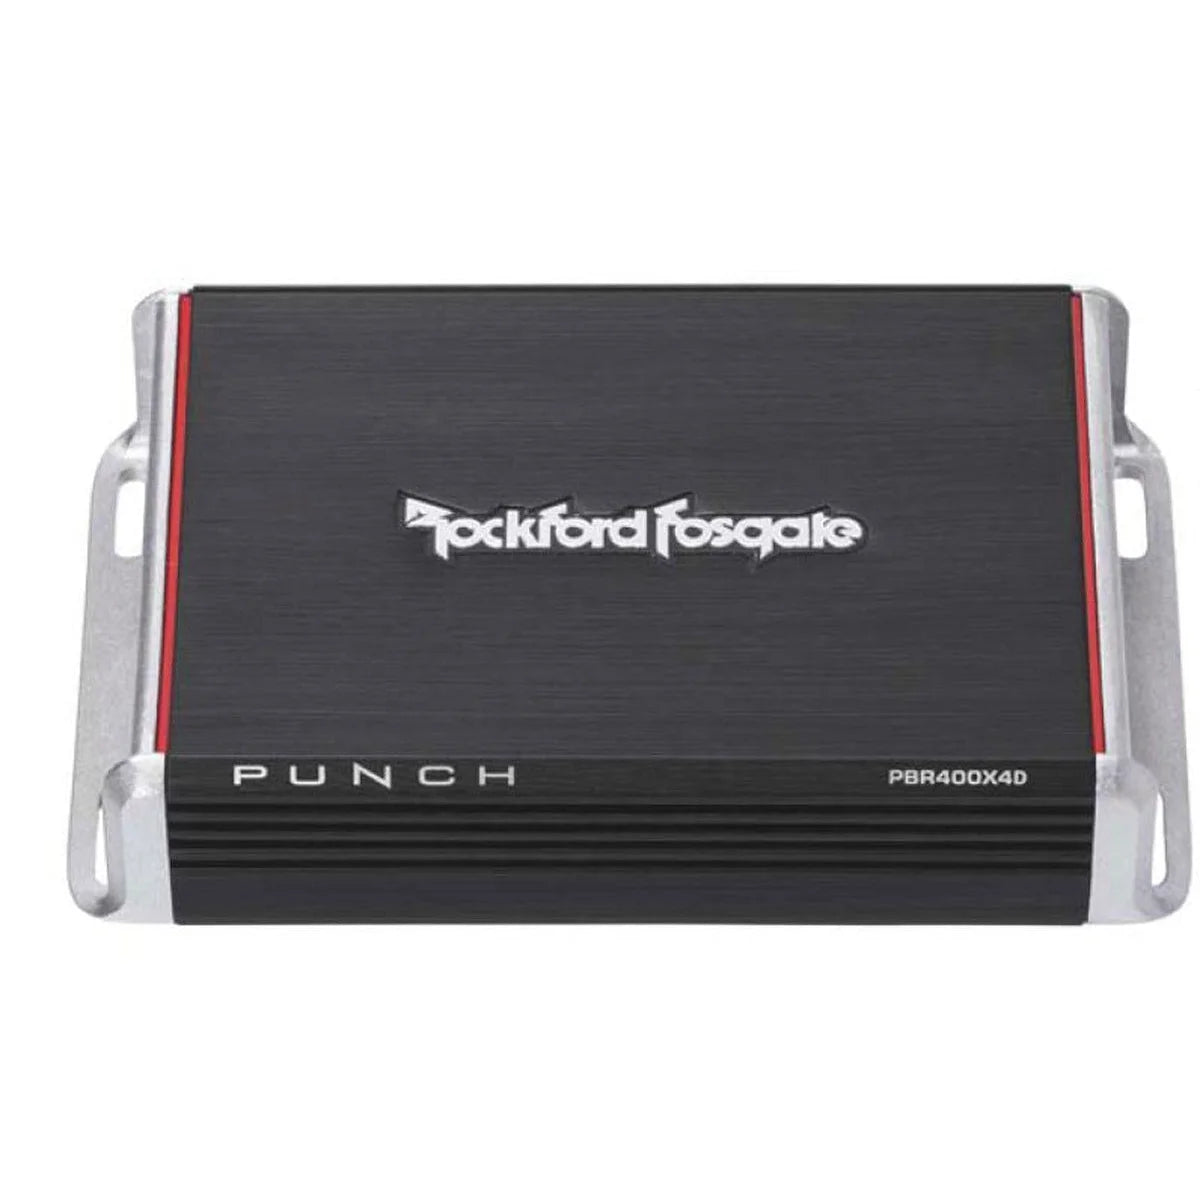 ROCKFORD FOSGATE Rockford Fosgate Verstärker PBR400x4D4-Kanal Punch 4-Kanal Verstärker